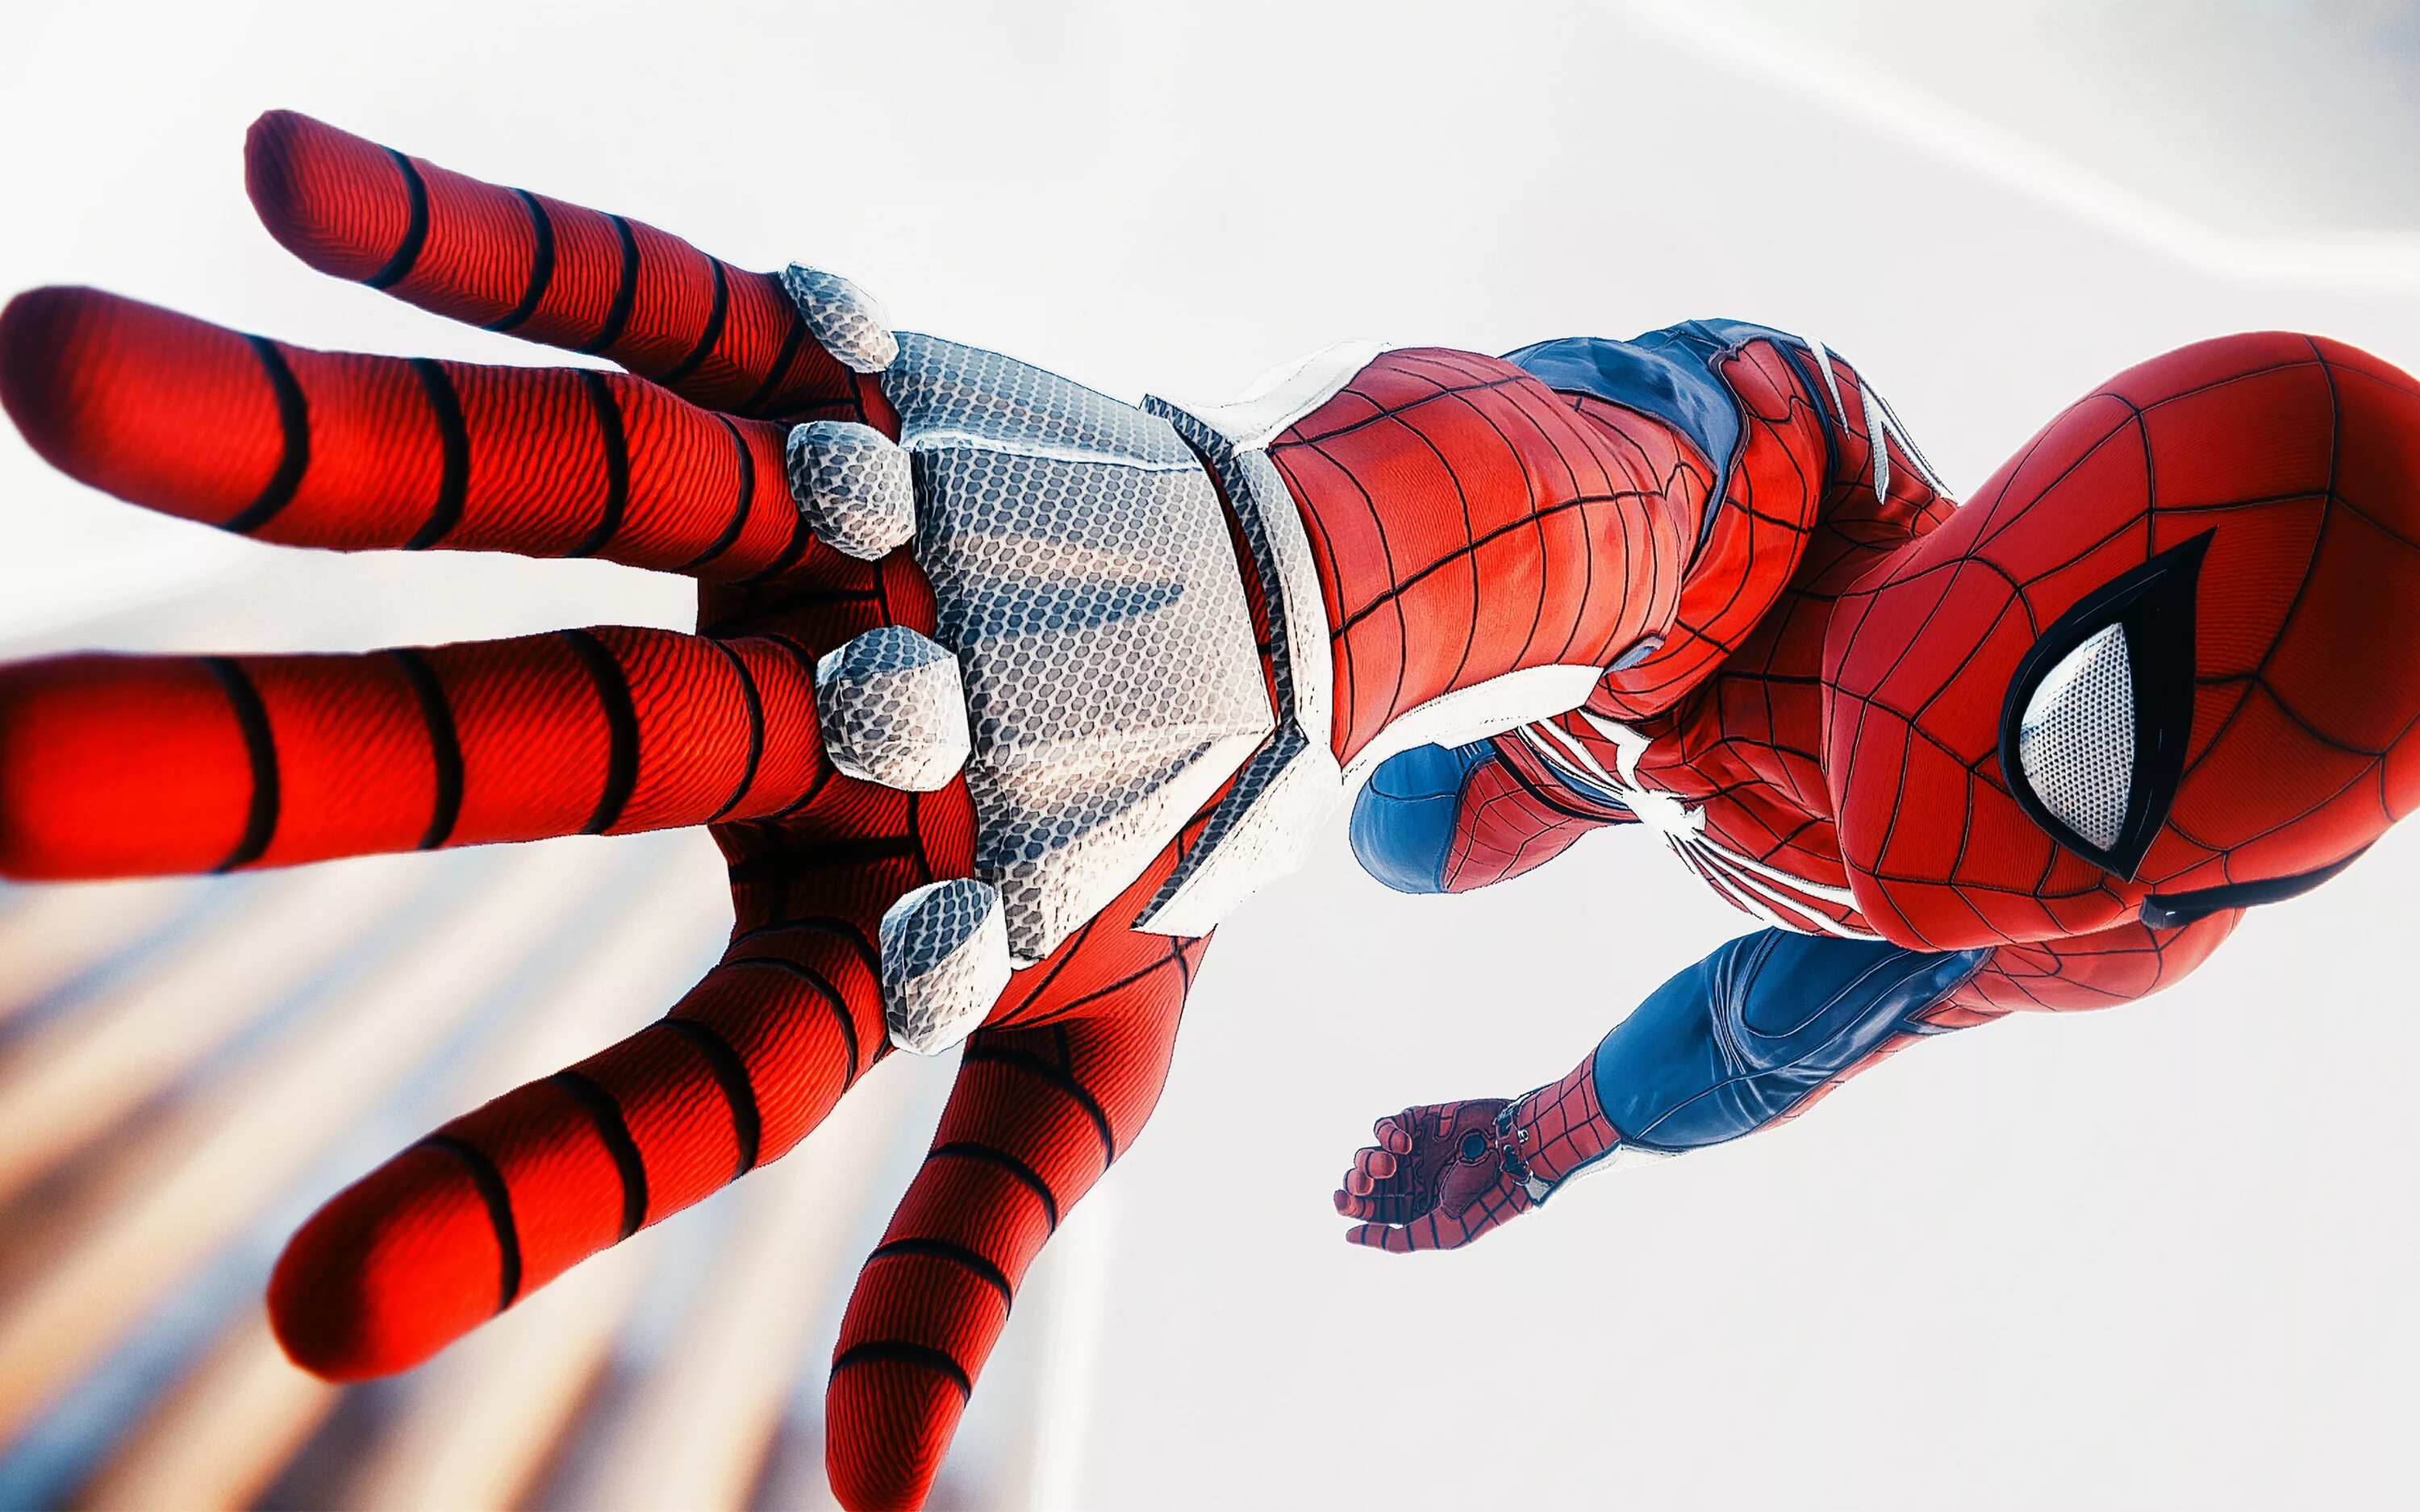 Spider man 4. Spider man ps4. Паук спидер ман. Человек паук РС 4. Spider man ps4 Advanced Suit.